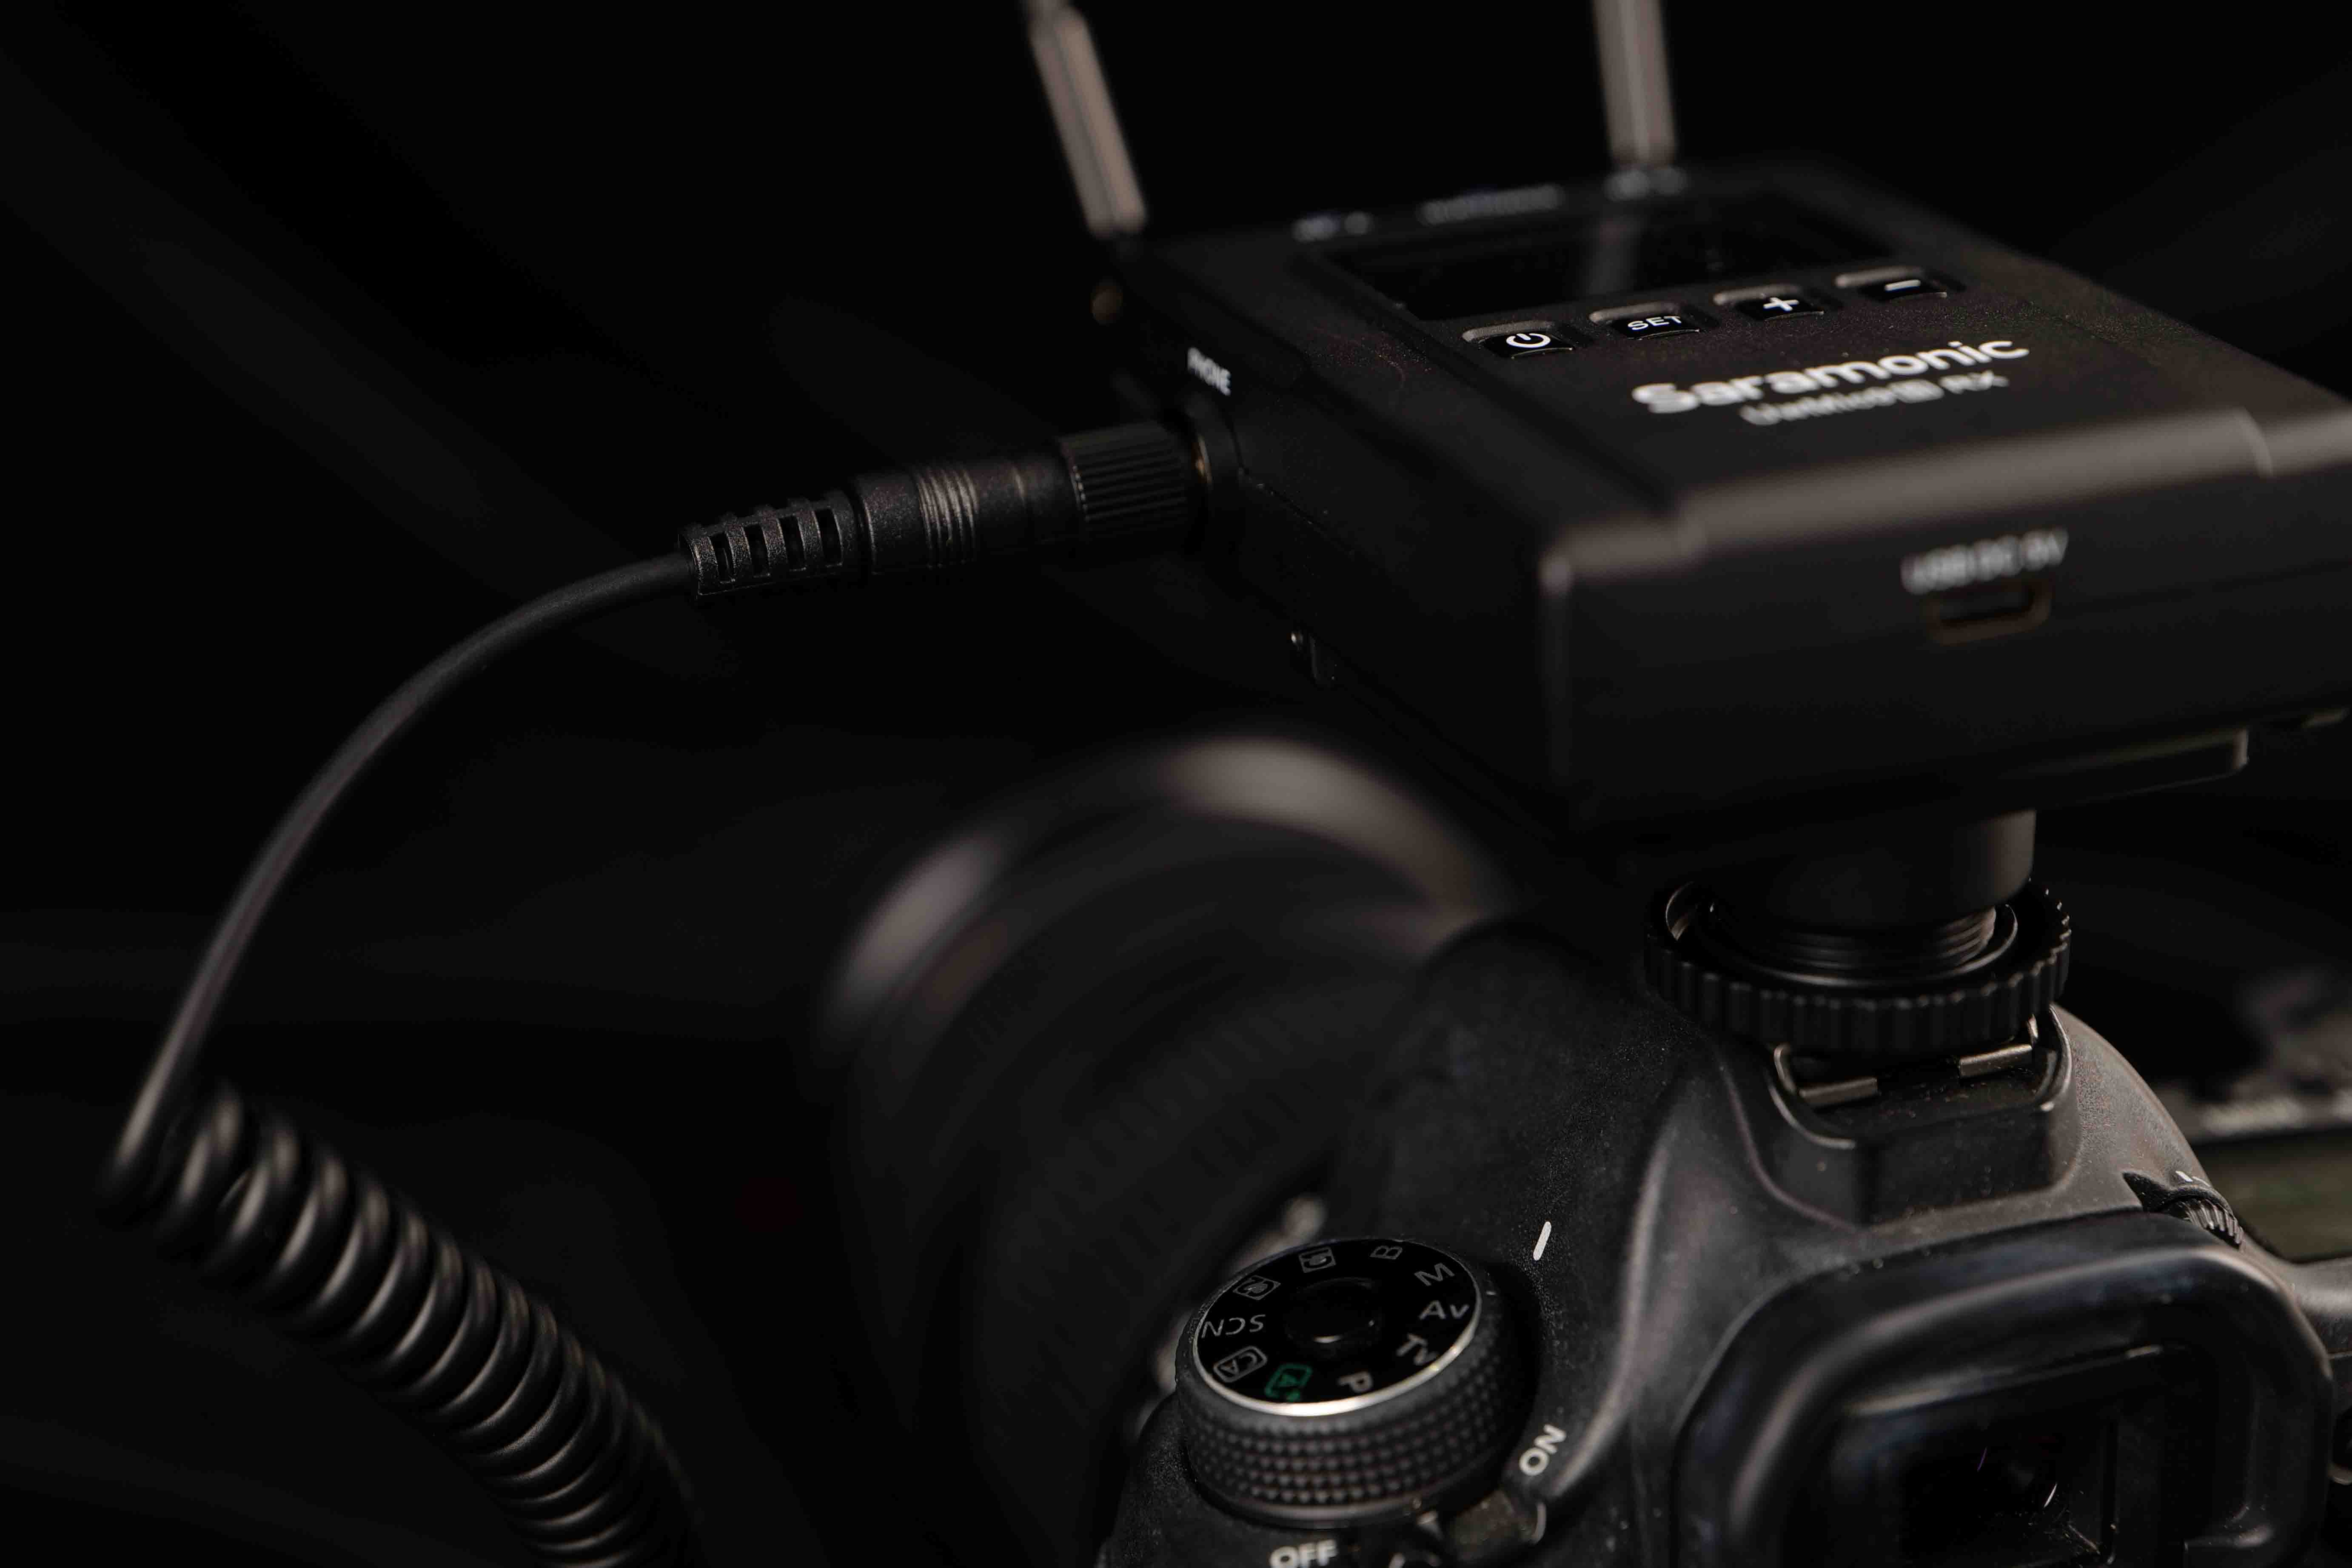 구성품인 콜드 슈 마운트 어댑터를 사용해 UwMic9S K2를 카메라에 장착한 모습.